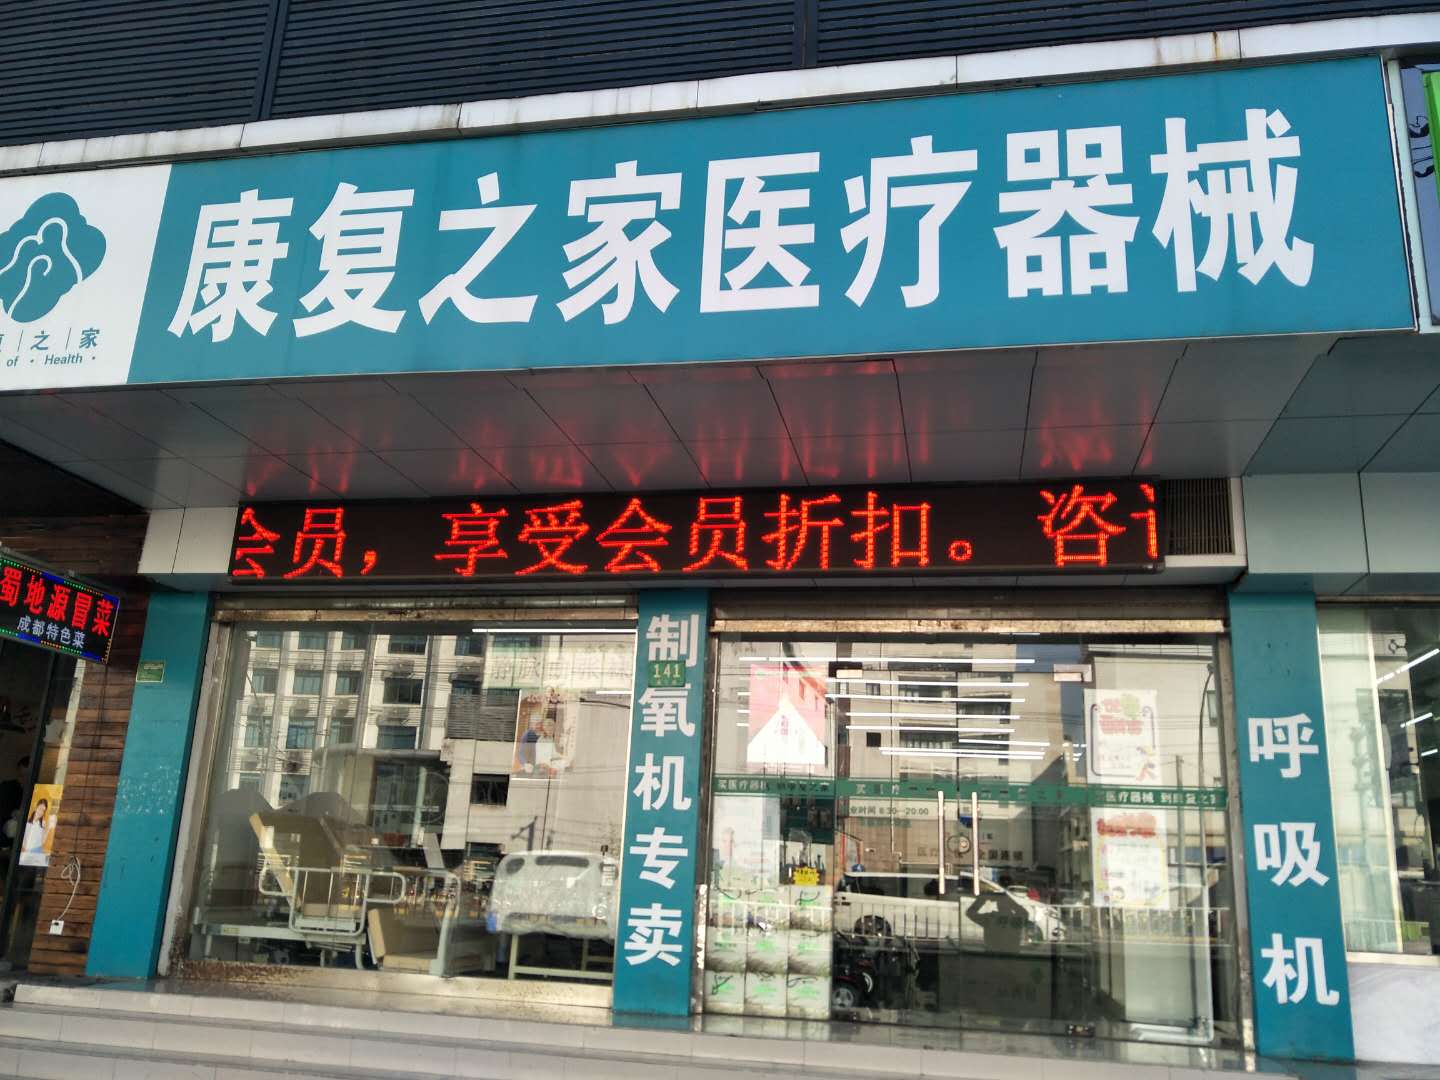  康复之家医疗器械上海海宁路店